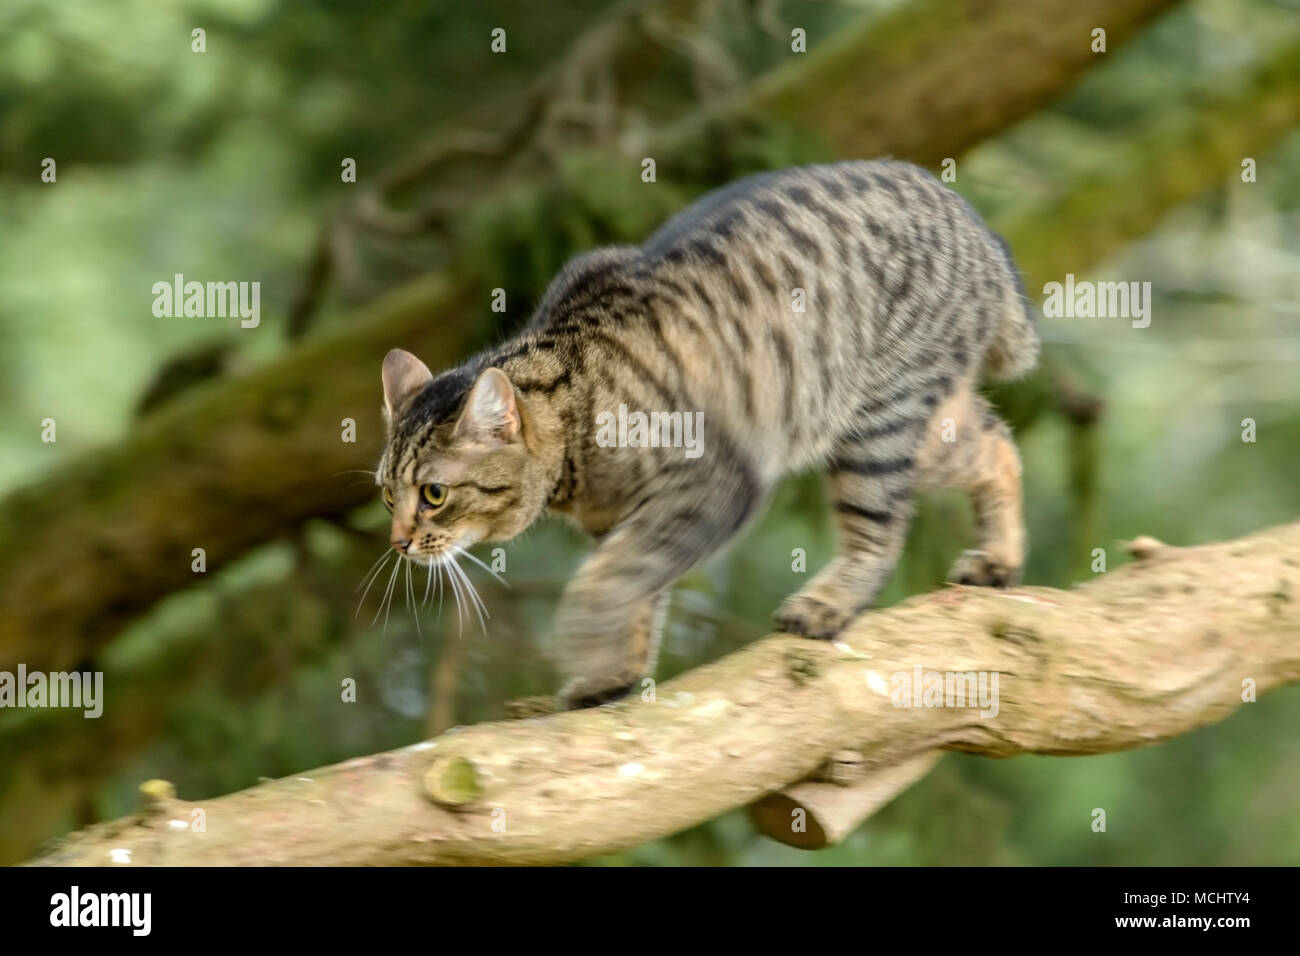 Jeune chat tigré, Bengal chat marchant le long d'une branche d'arbre, mouvement de jambe et flou, sur un arbre Chypre Monterey Banque D'Images